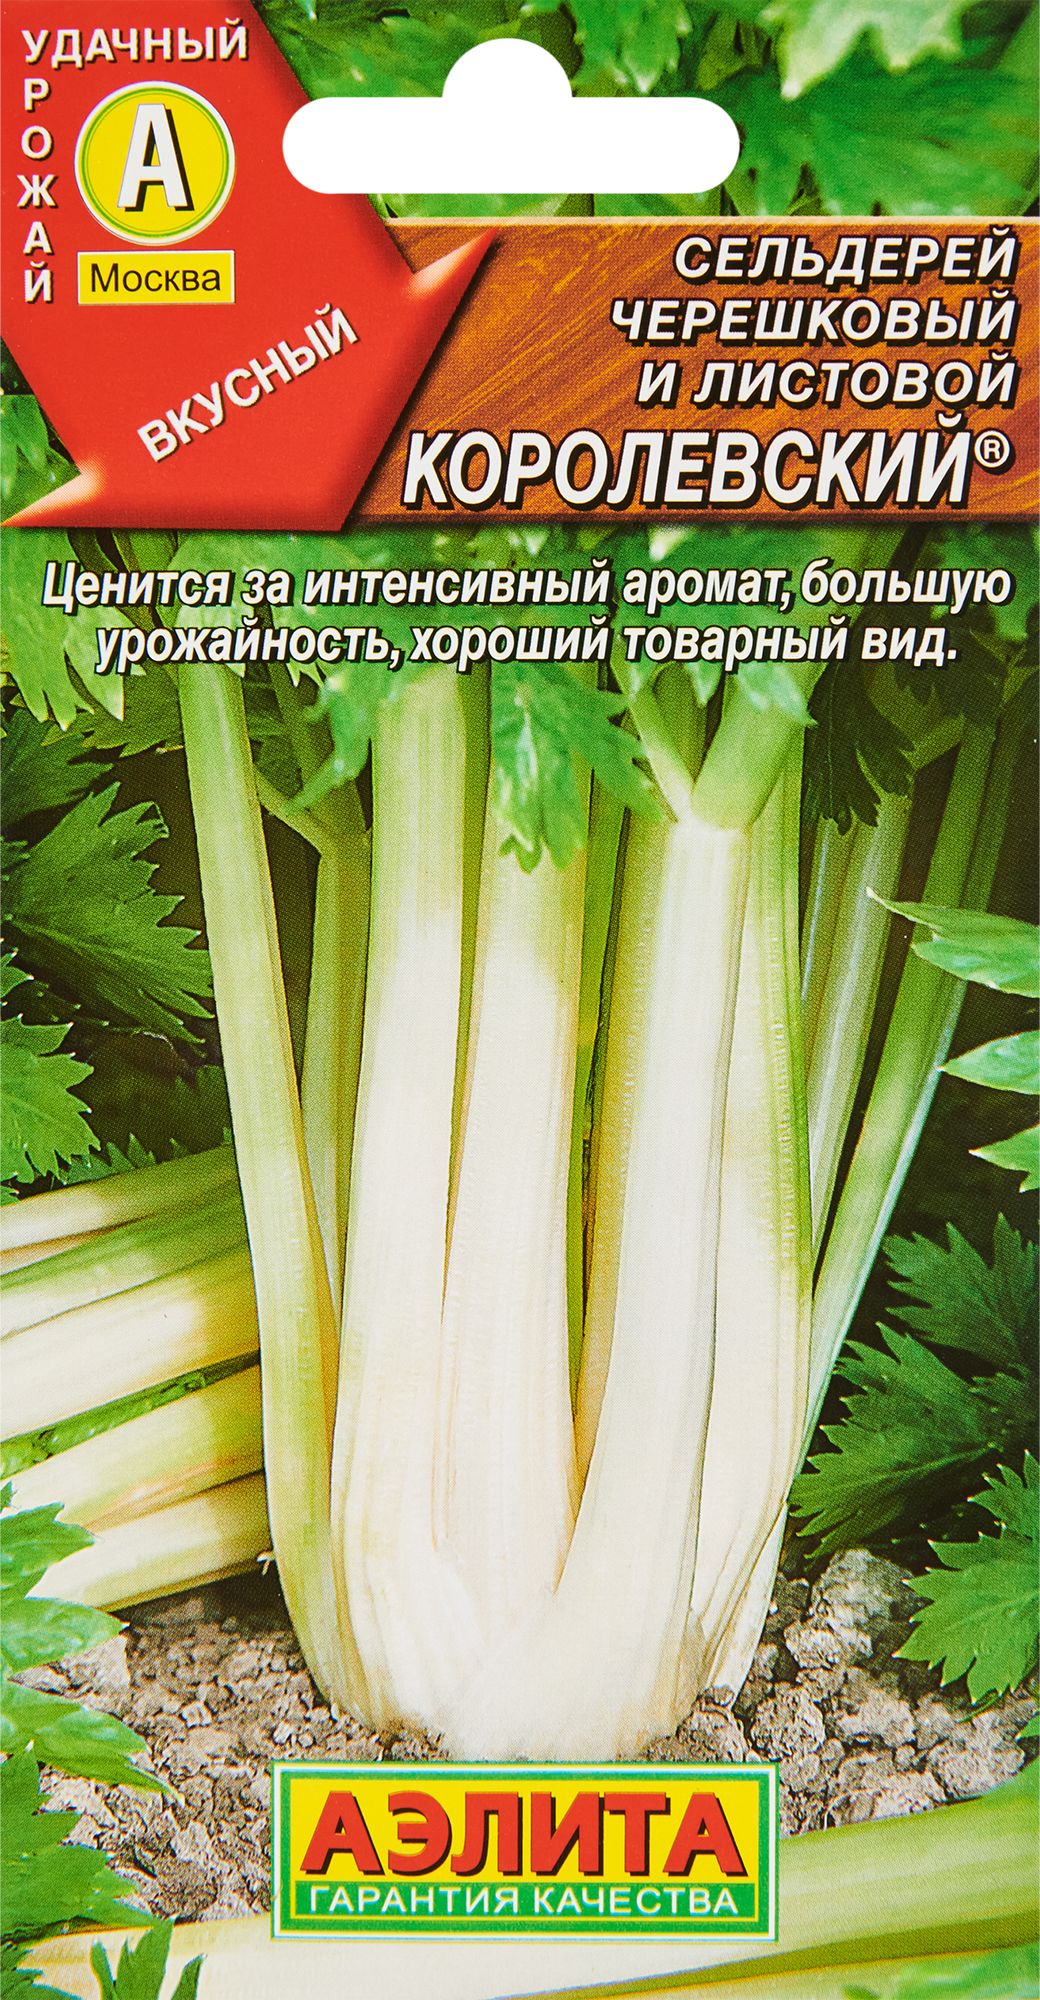 Семена овощей Аэлита сельдерей черешковый Королевский в Москве – купить понизкой цене в интернет-магазине Леруа Мерлен